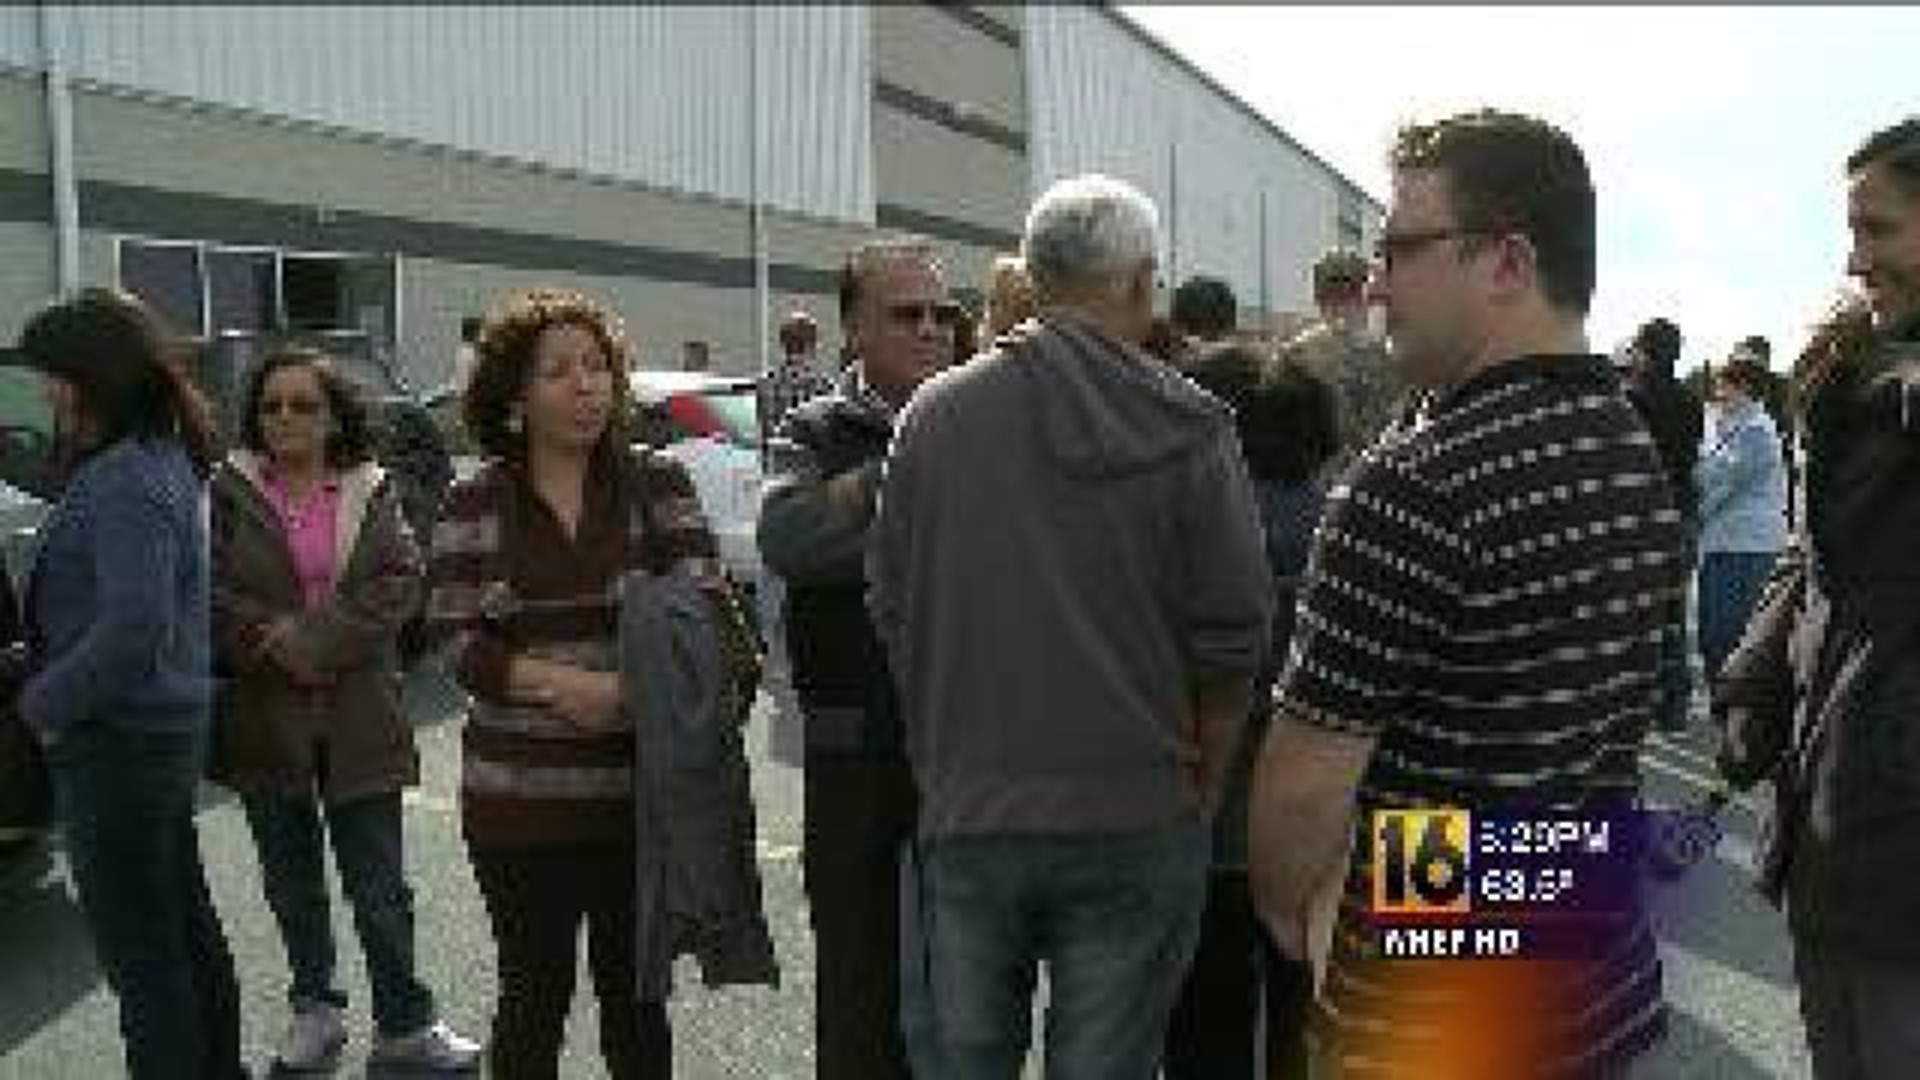 Hundreds Line Up for Job Fair